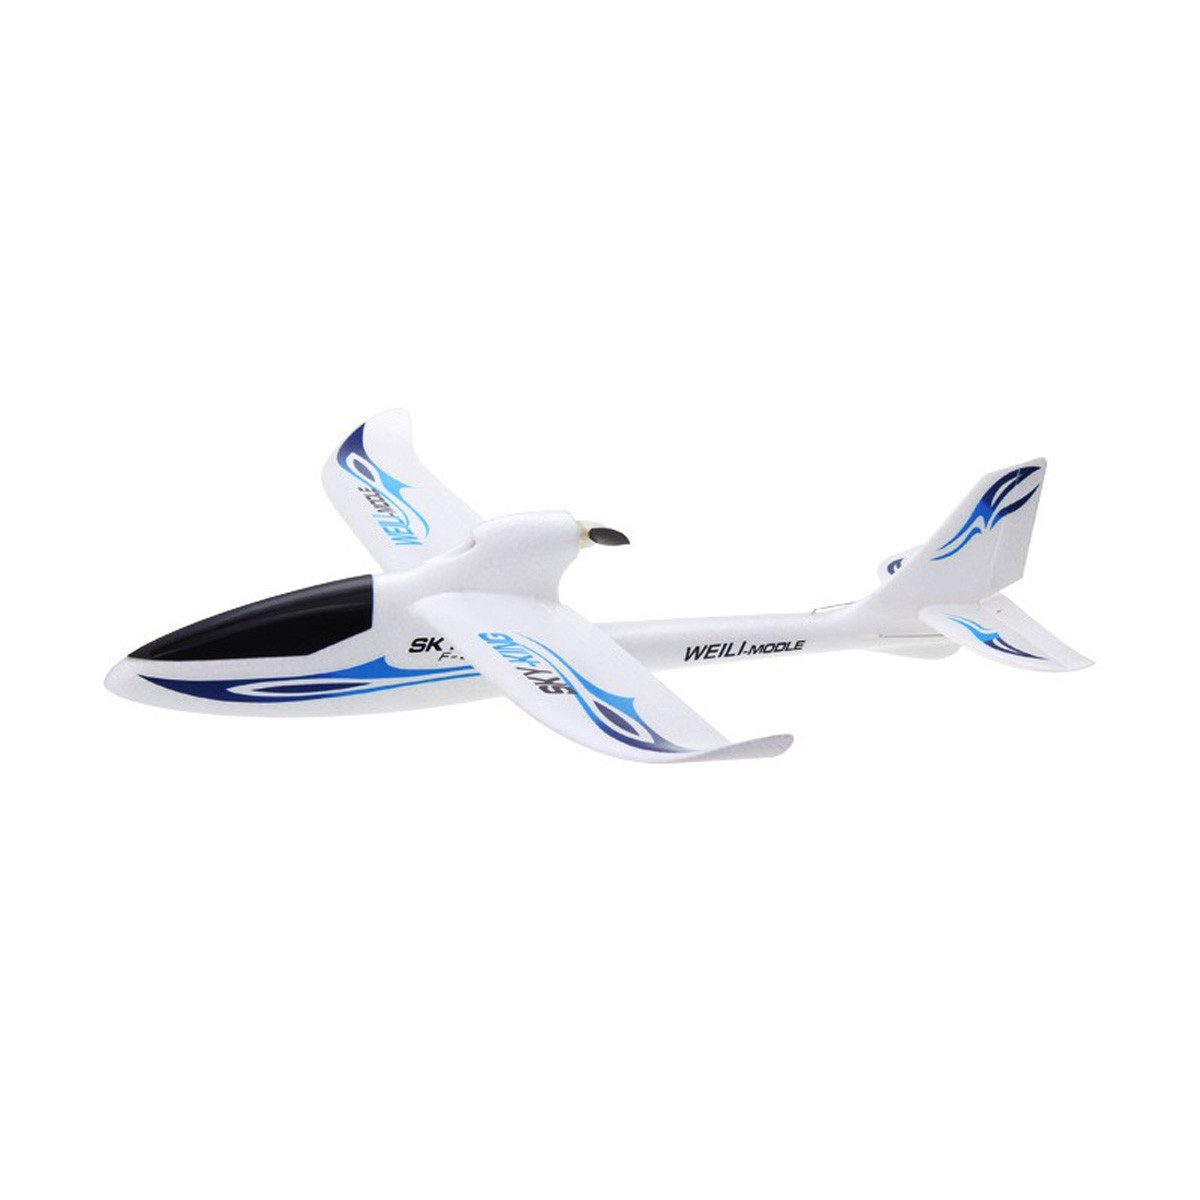 yozhiqu Modellflugzeug Mehrkanaliges Pushback-Hochgeschwindigkeits Segelflugzeug, mit sechsachsige Gyroskop, ferngesteuerten Flugzeug Modell Spielzeug